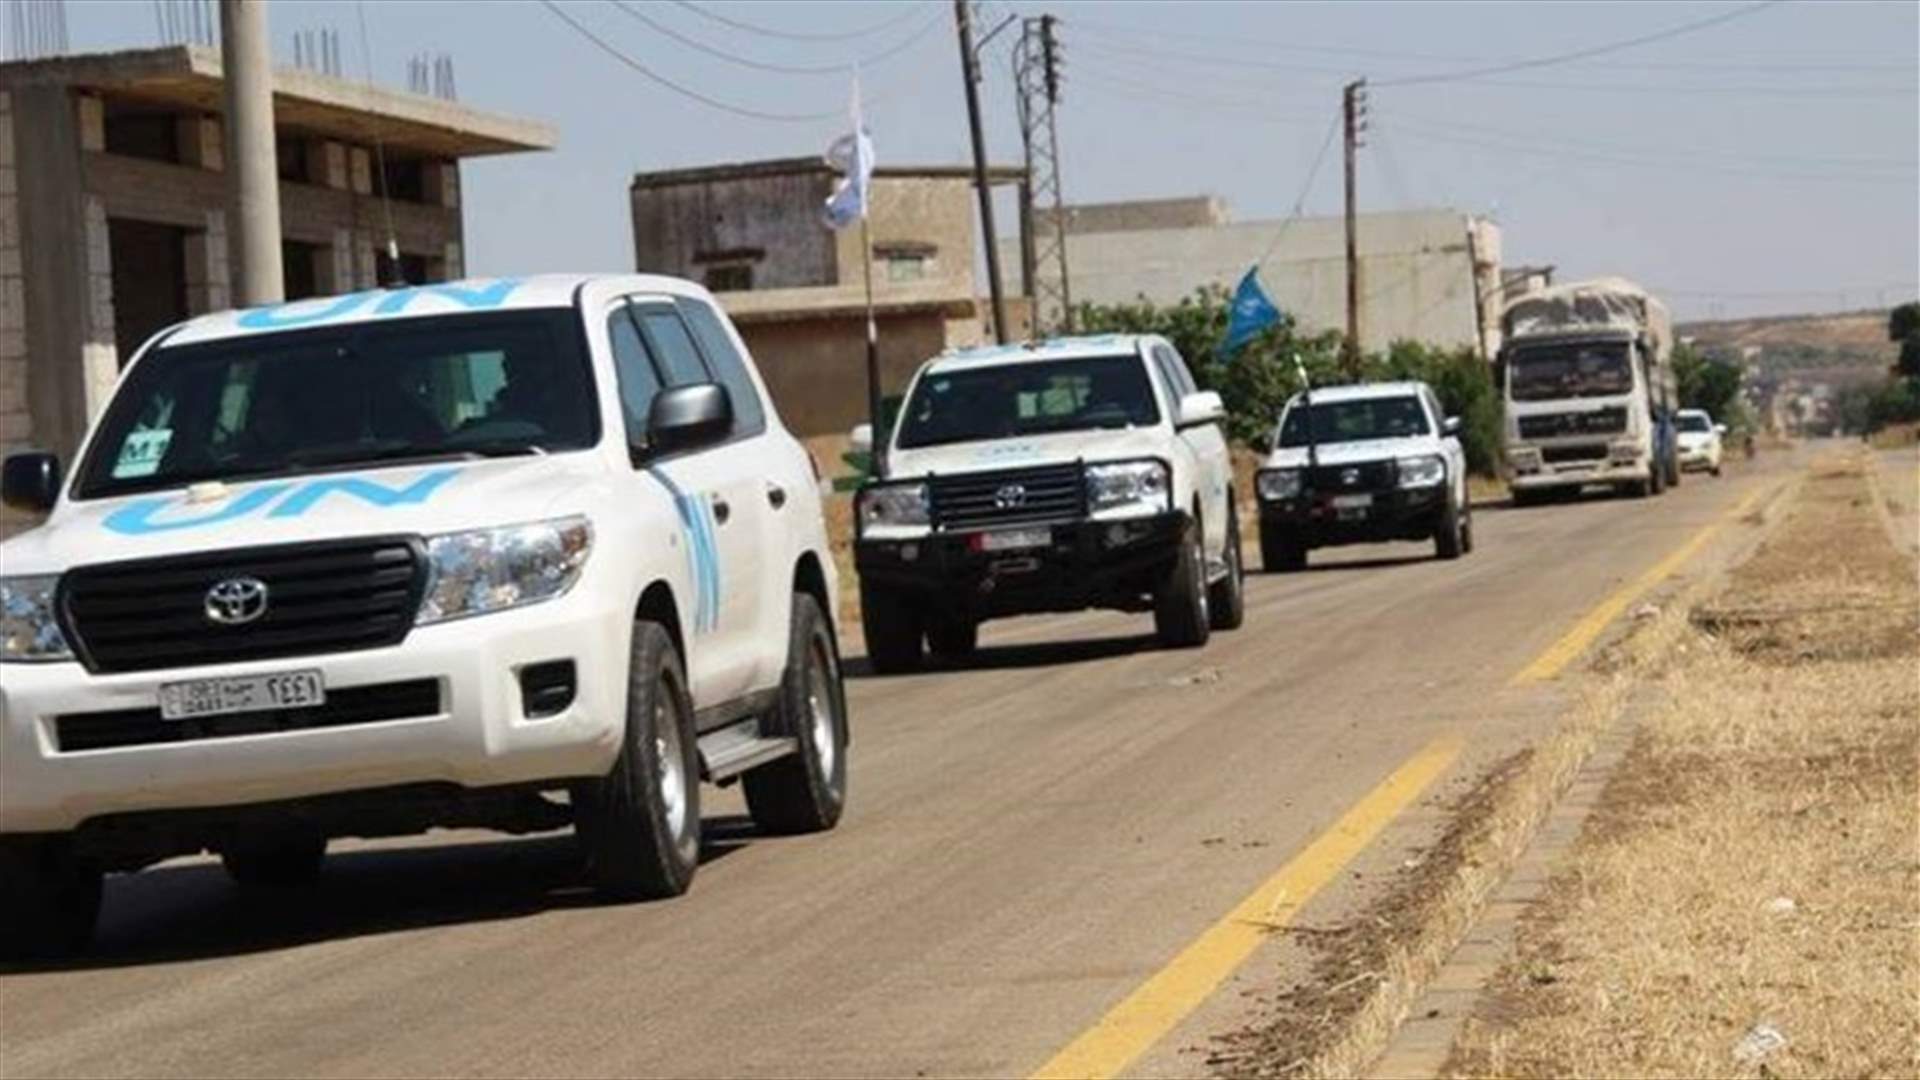 Aid convoy reaches Syria&#39;s besieged Homs&#39; Al Waer - UN